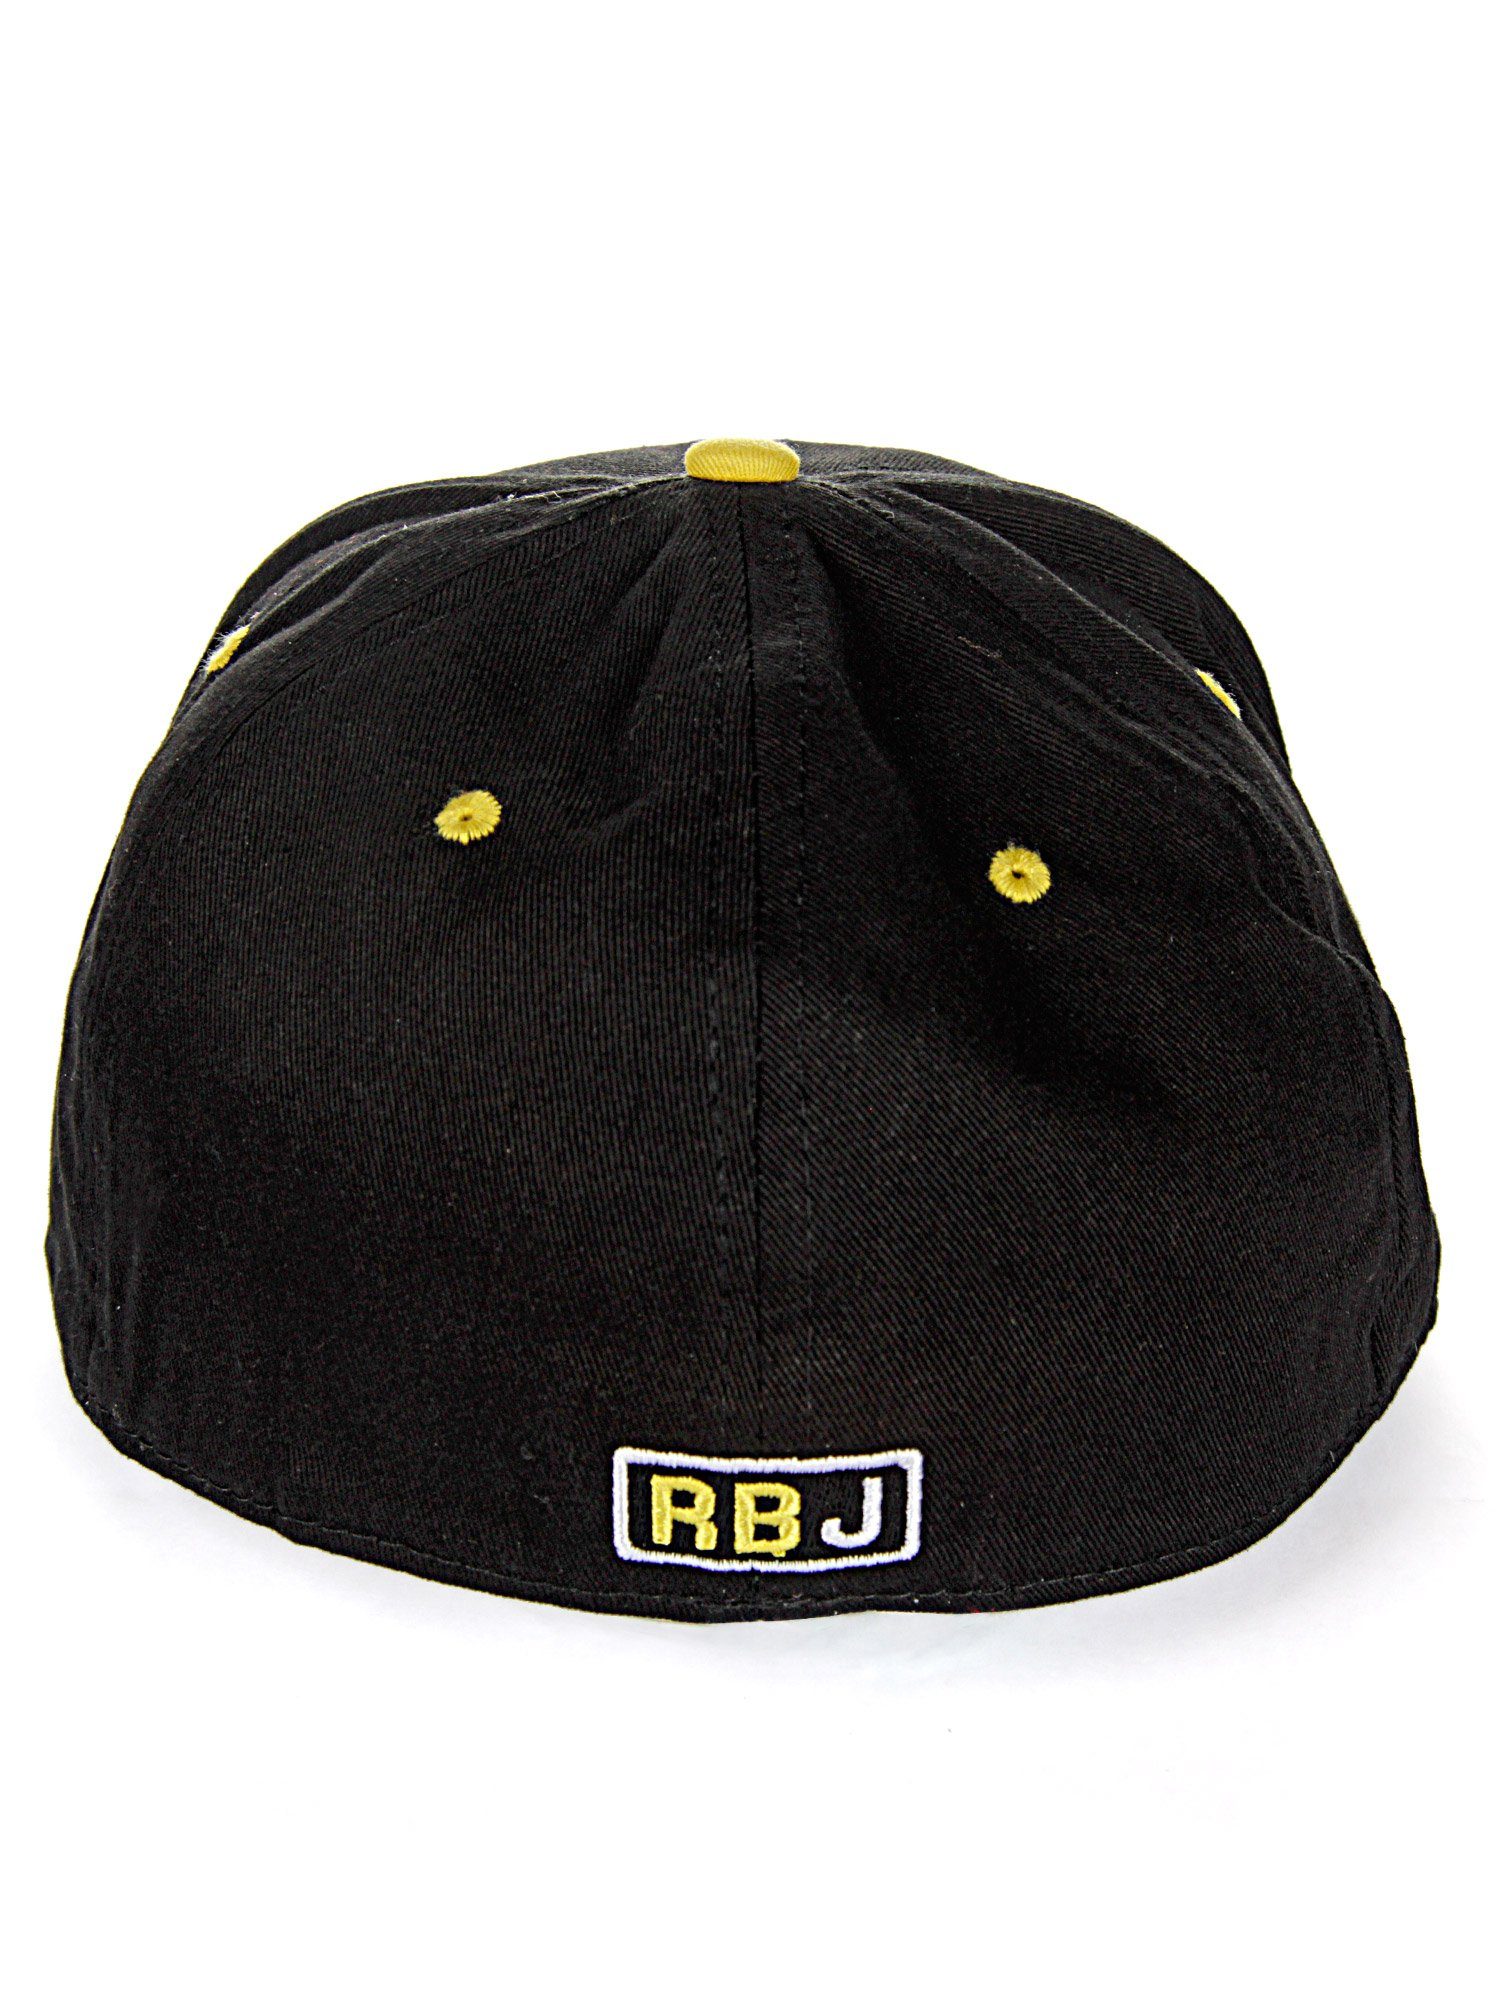 RedBridge Baseball Cap Durham Schirm mit schwarz-gelb kontrastfarbigem